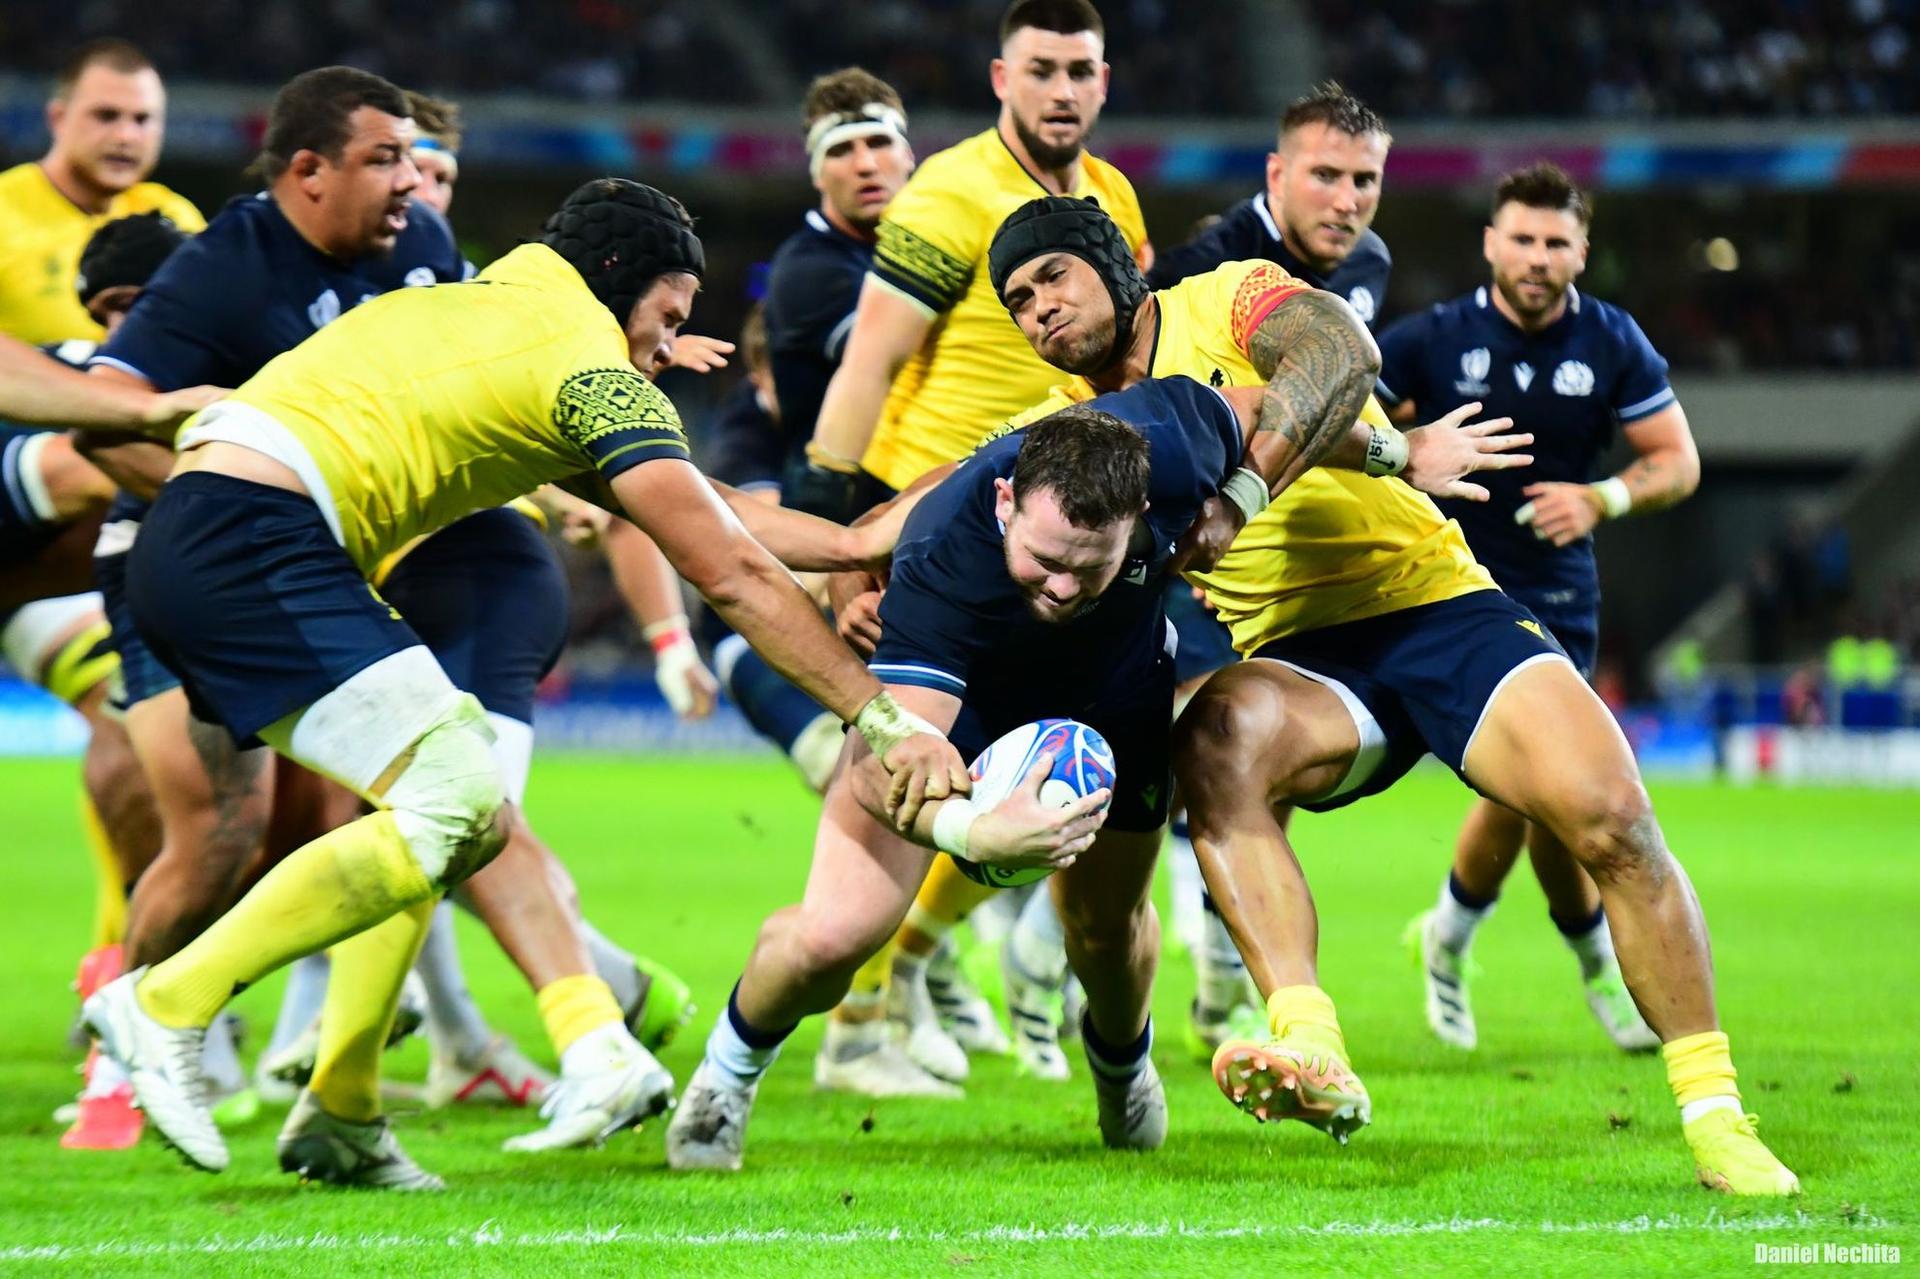 <em>Echipa de rugby a României nu a făcut față asalturilor jucătorilor scoțieni. Foto: Daniel Nechita</em>